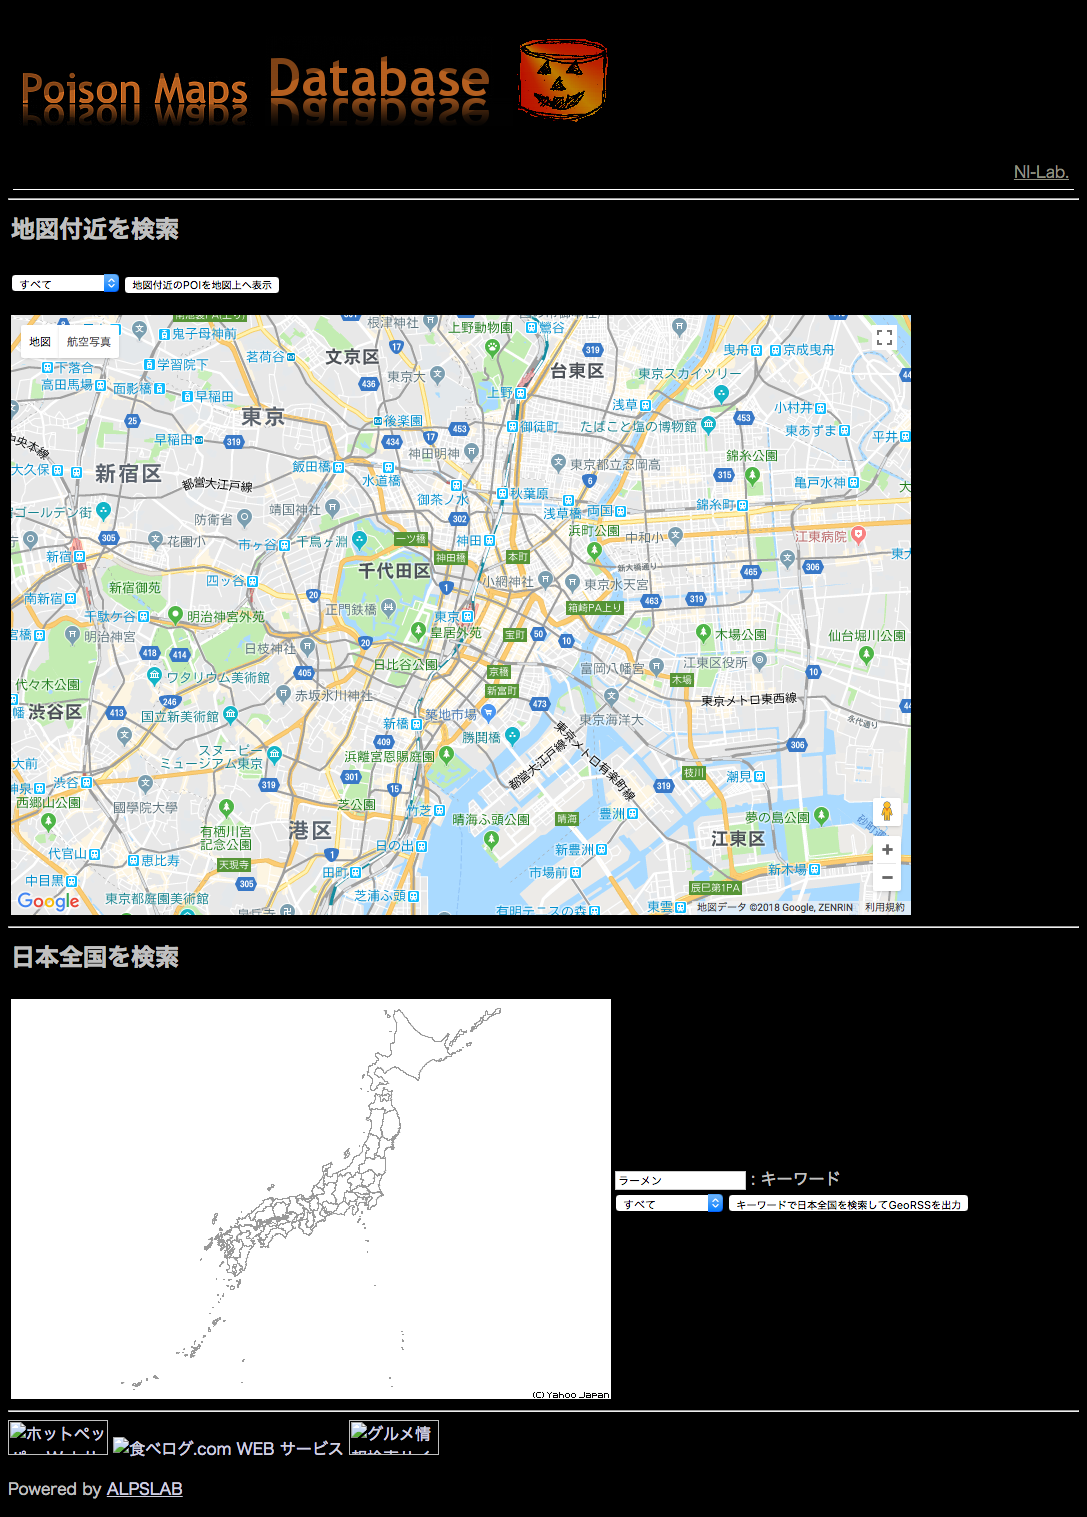 ぽいだぶ - Poison Maps Database